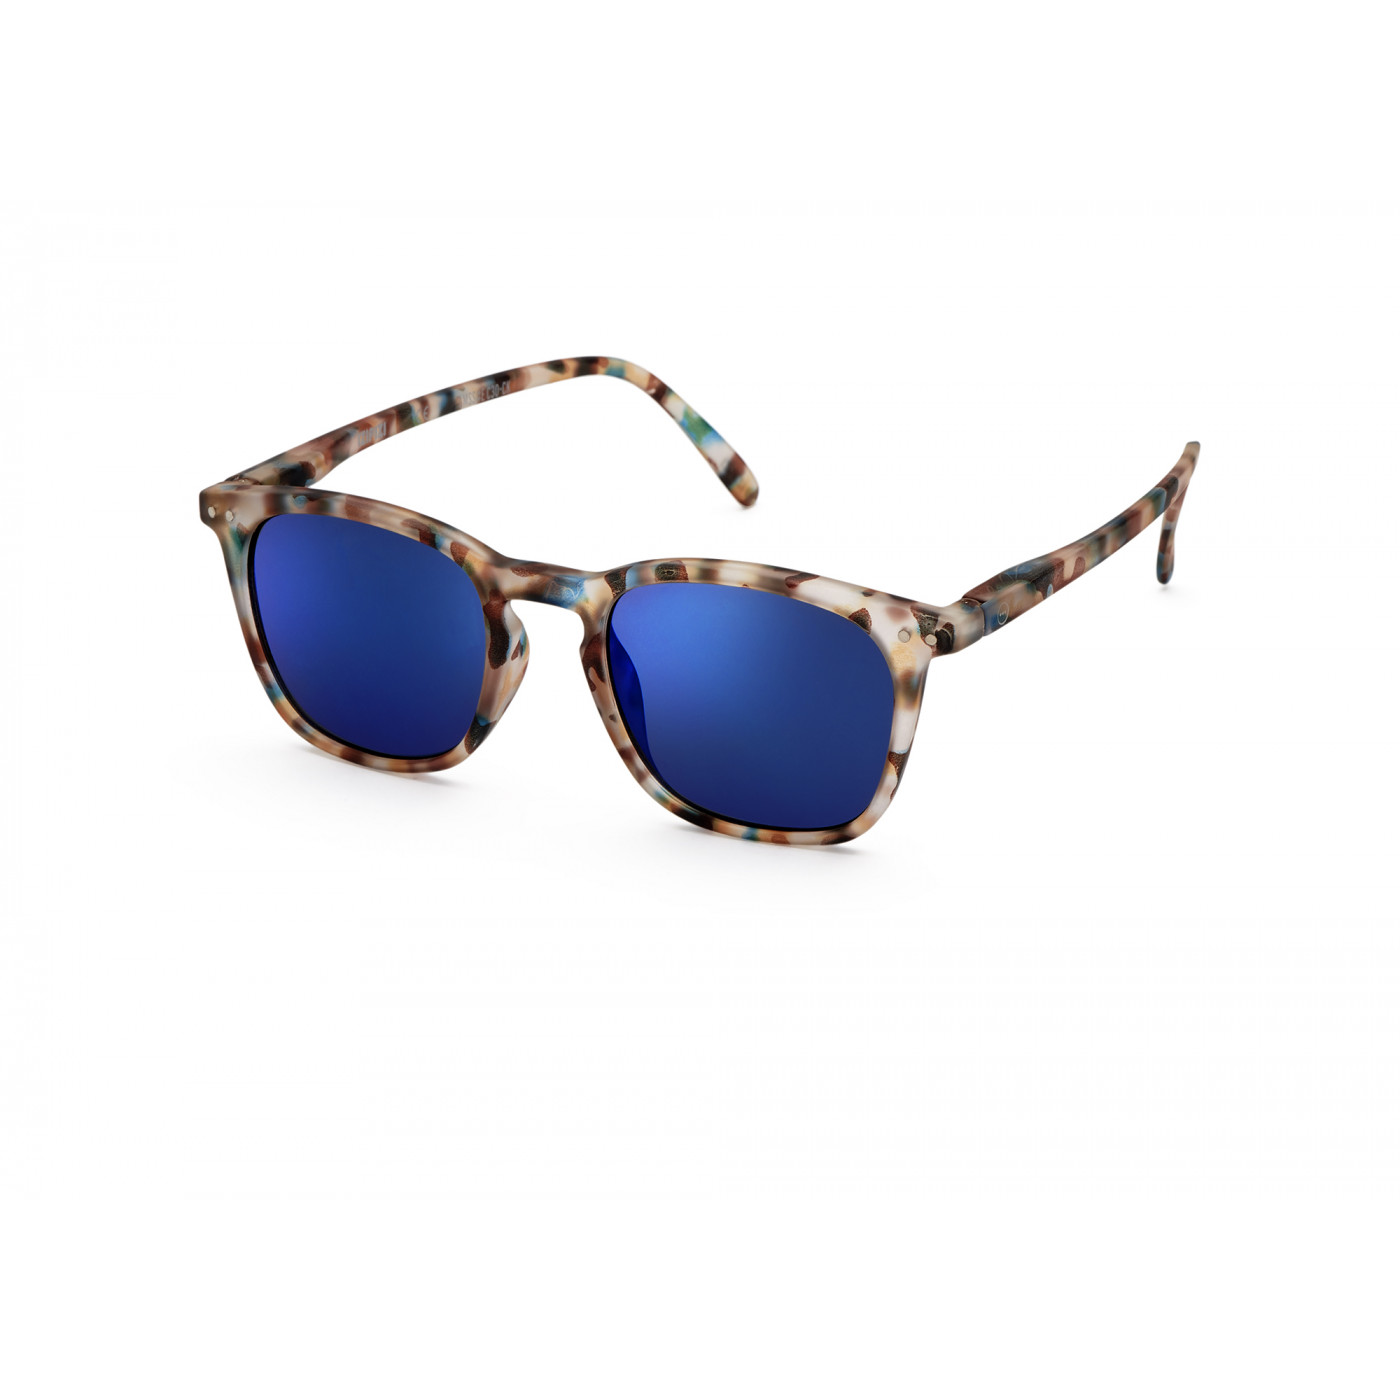 Izipizi - Sun E blue tortoise blue mirror lenses naočare